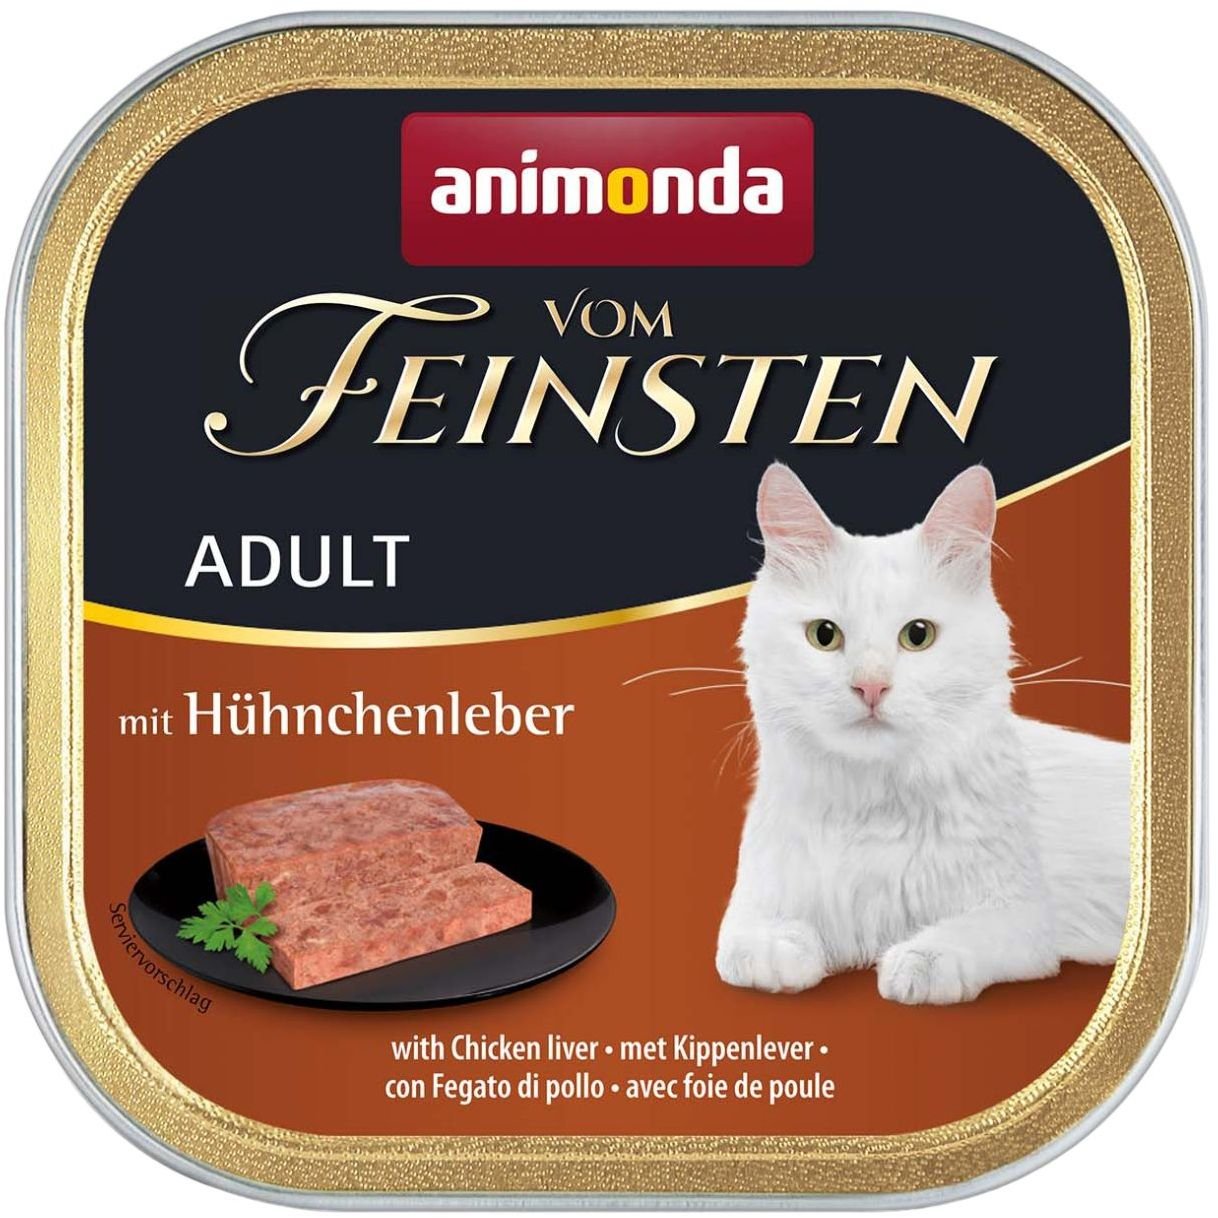 Влажный корм для кошек Animonda Vom Feinsten Adult with Chicken liver, с куриной печенью, 100 г - фото 1